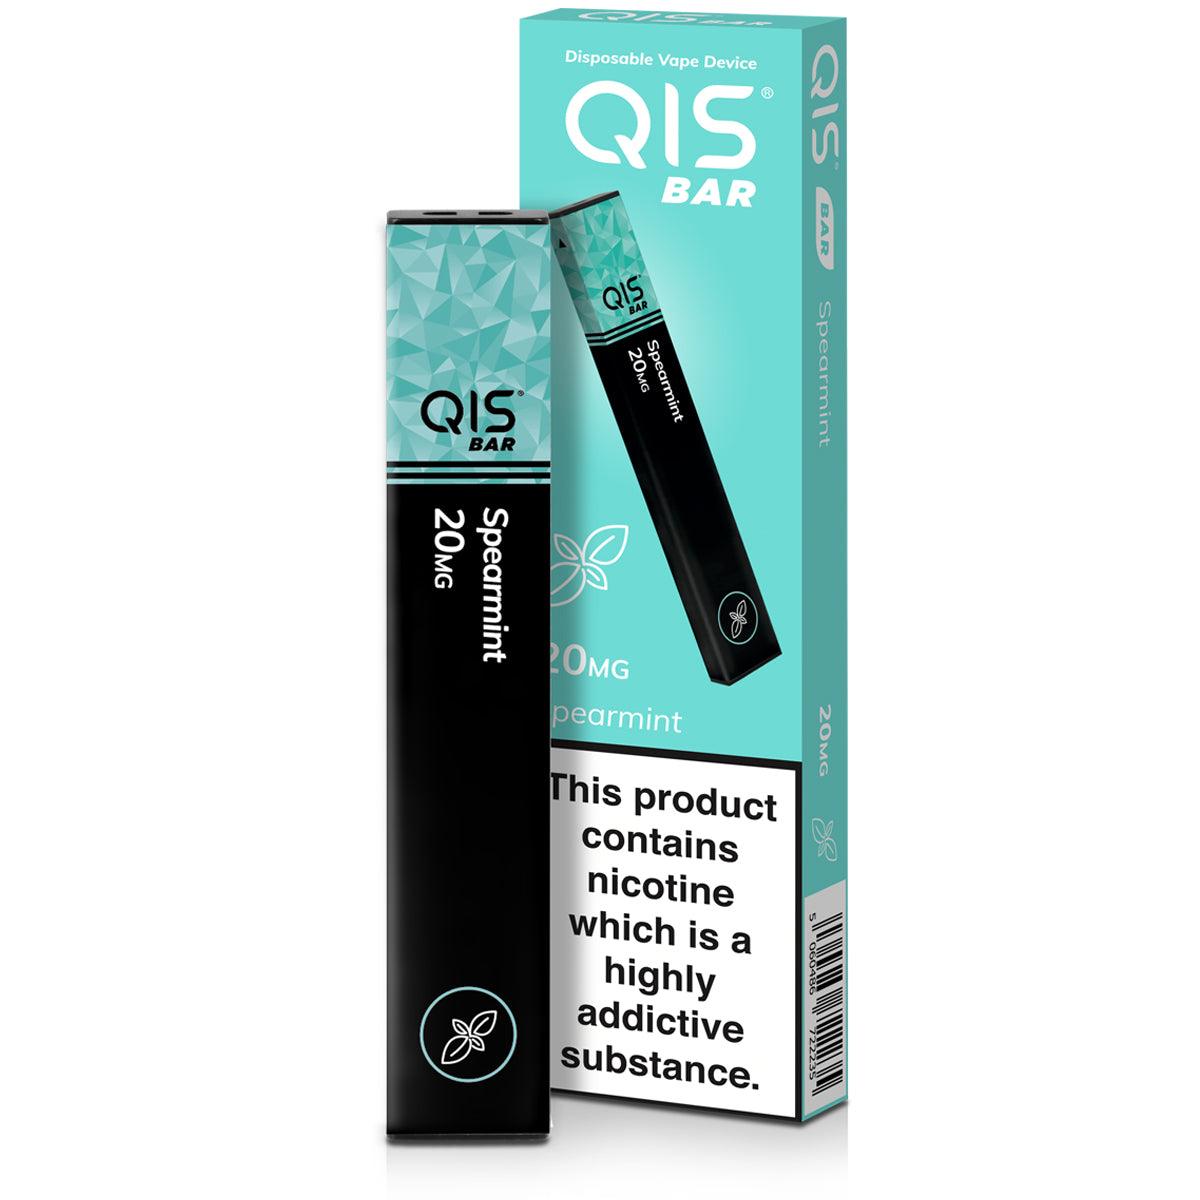 Qis Disposable Vape Device - spearmint